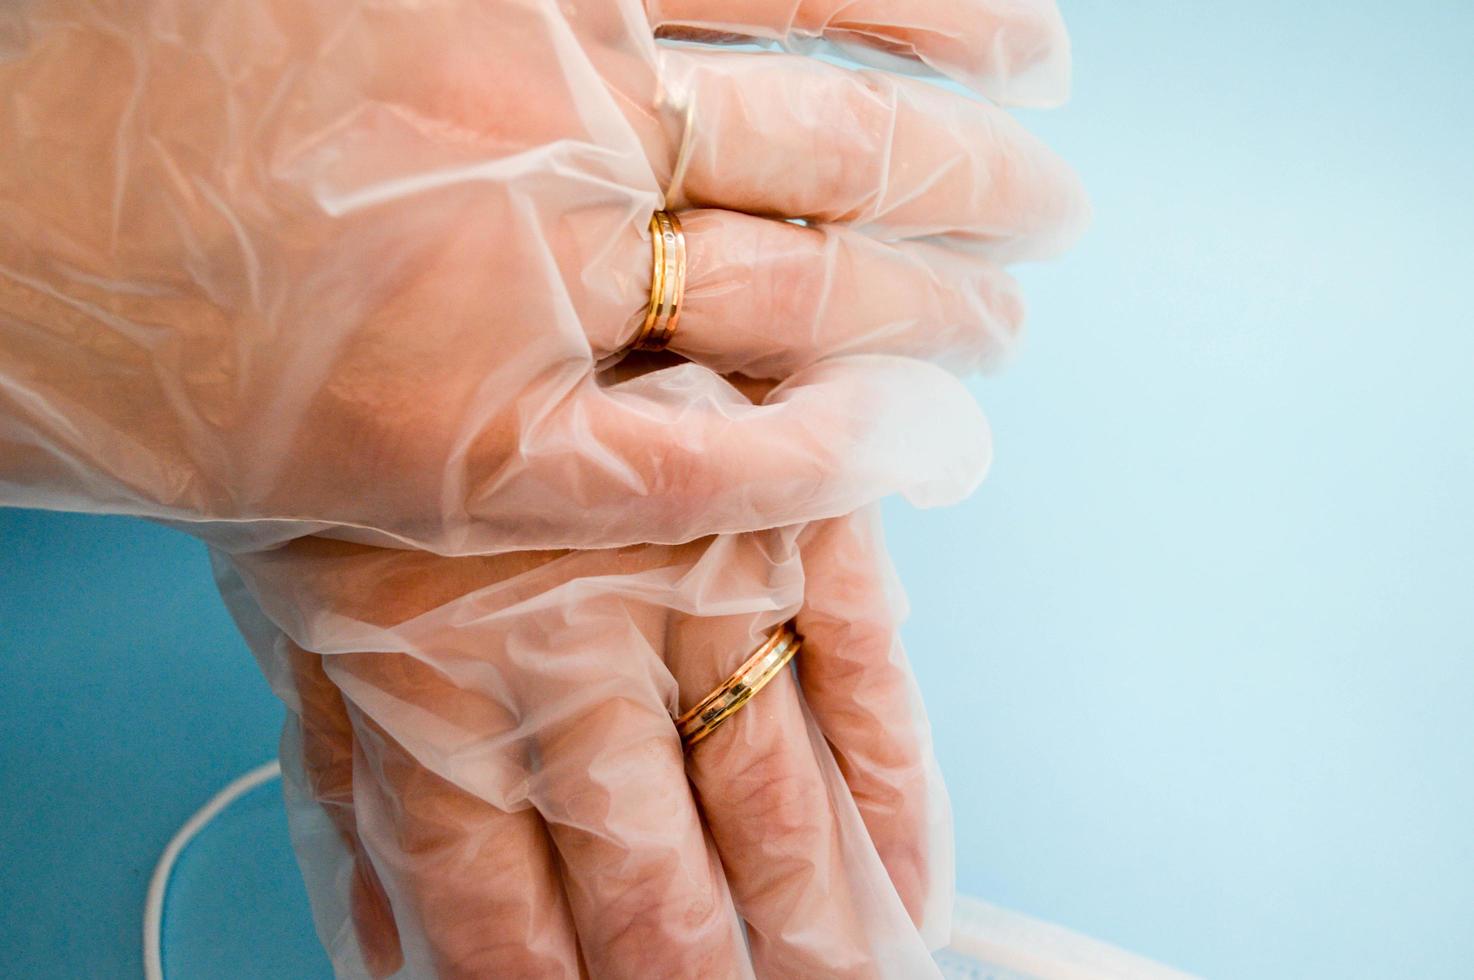 anillos de boda de oro en las manos con guantes desechables de caucho médico protector para la protección contra enfermedades mortales peligrosas de microbios y virus por coronavirus covid-19 sobre un fondo azul foto